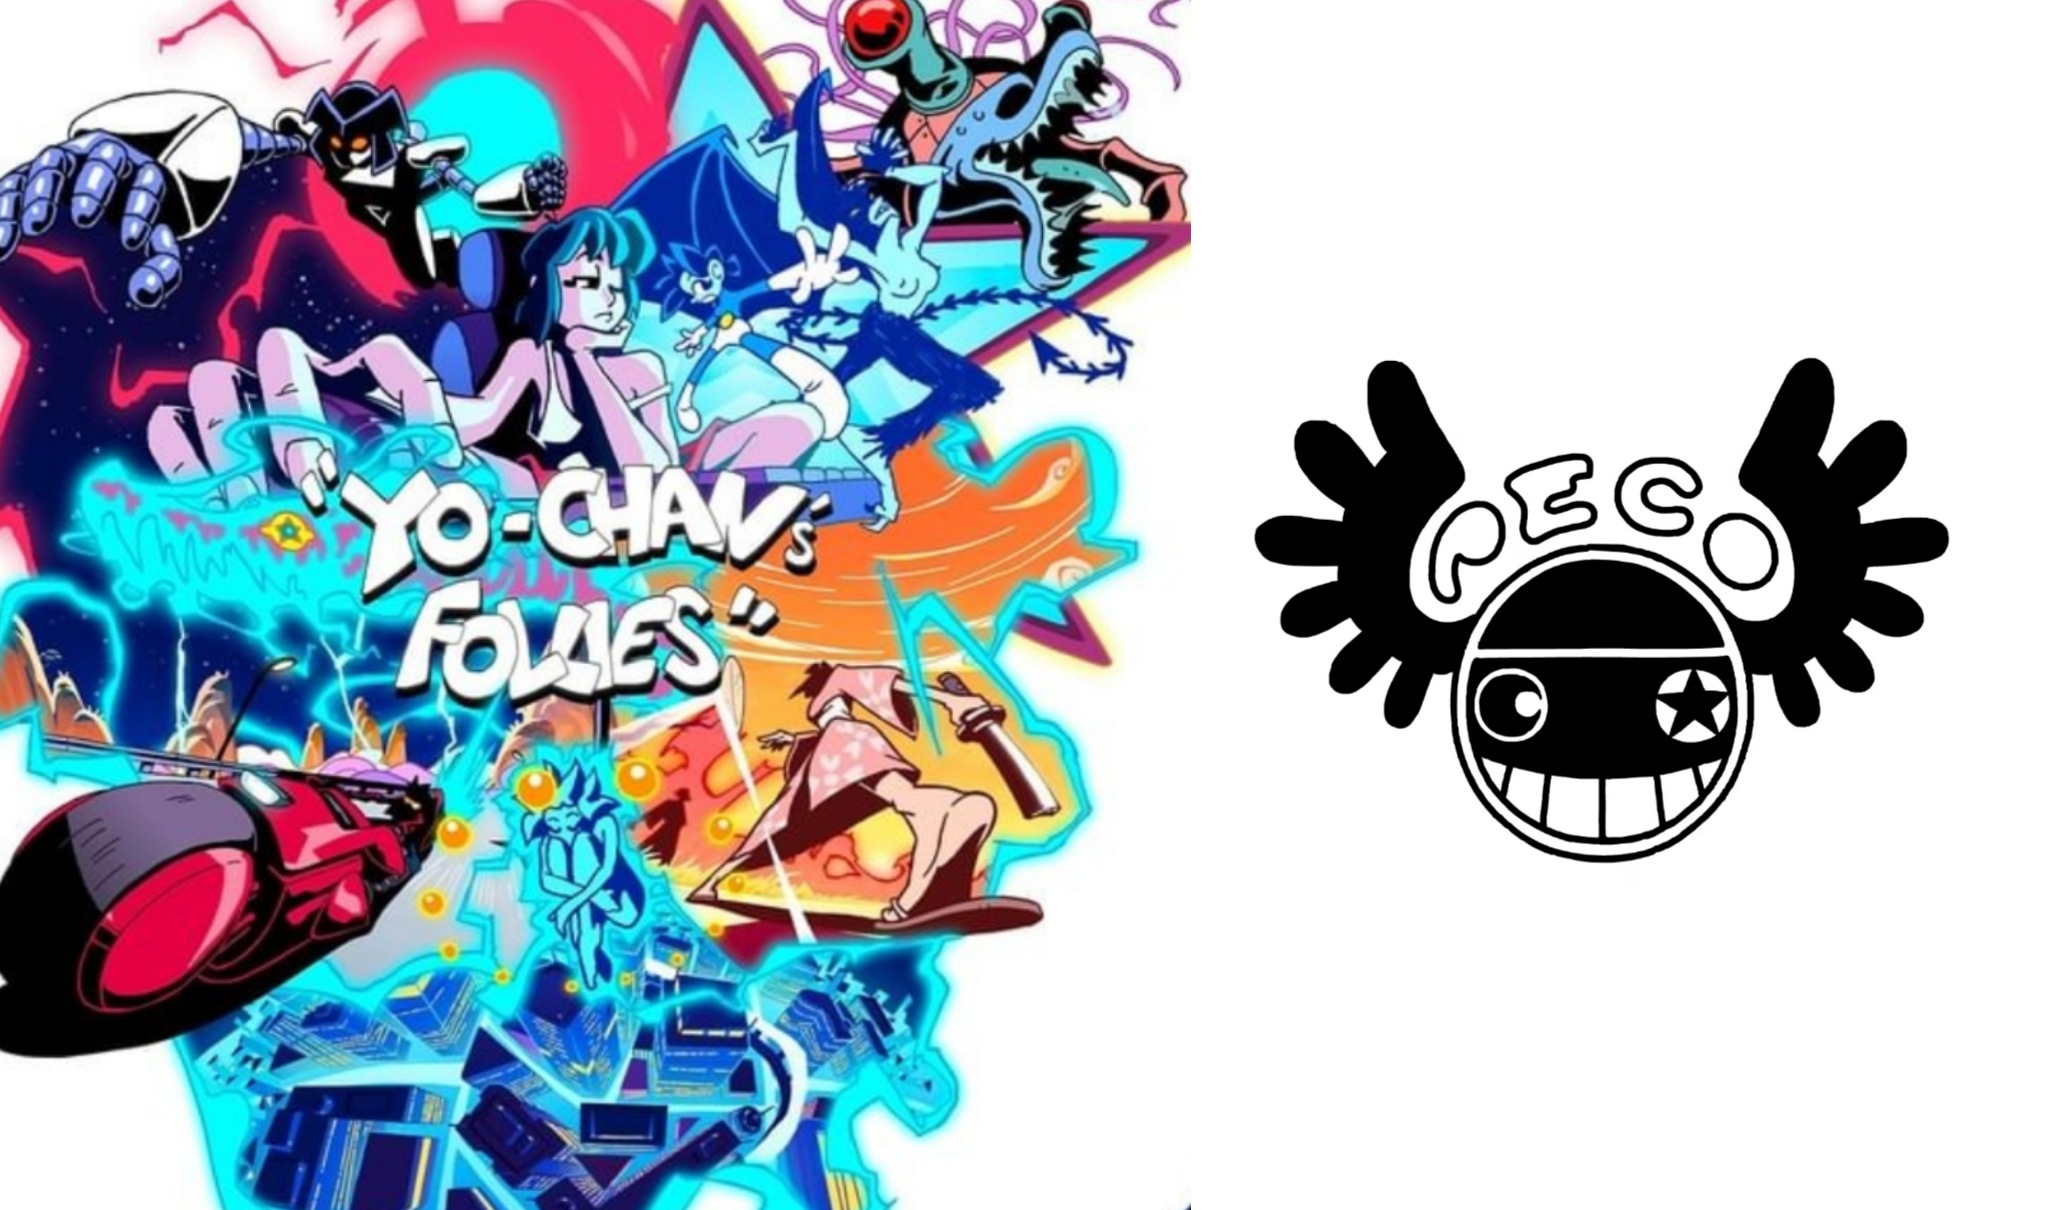 Logo Yo-chan's Follies e logo dello Studio Peco